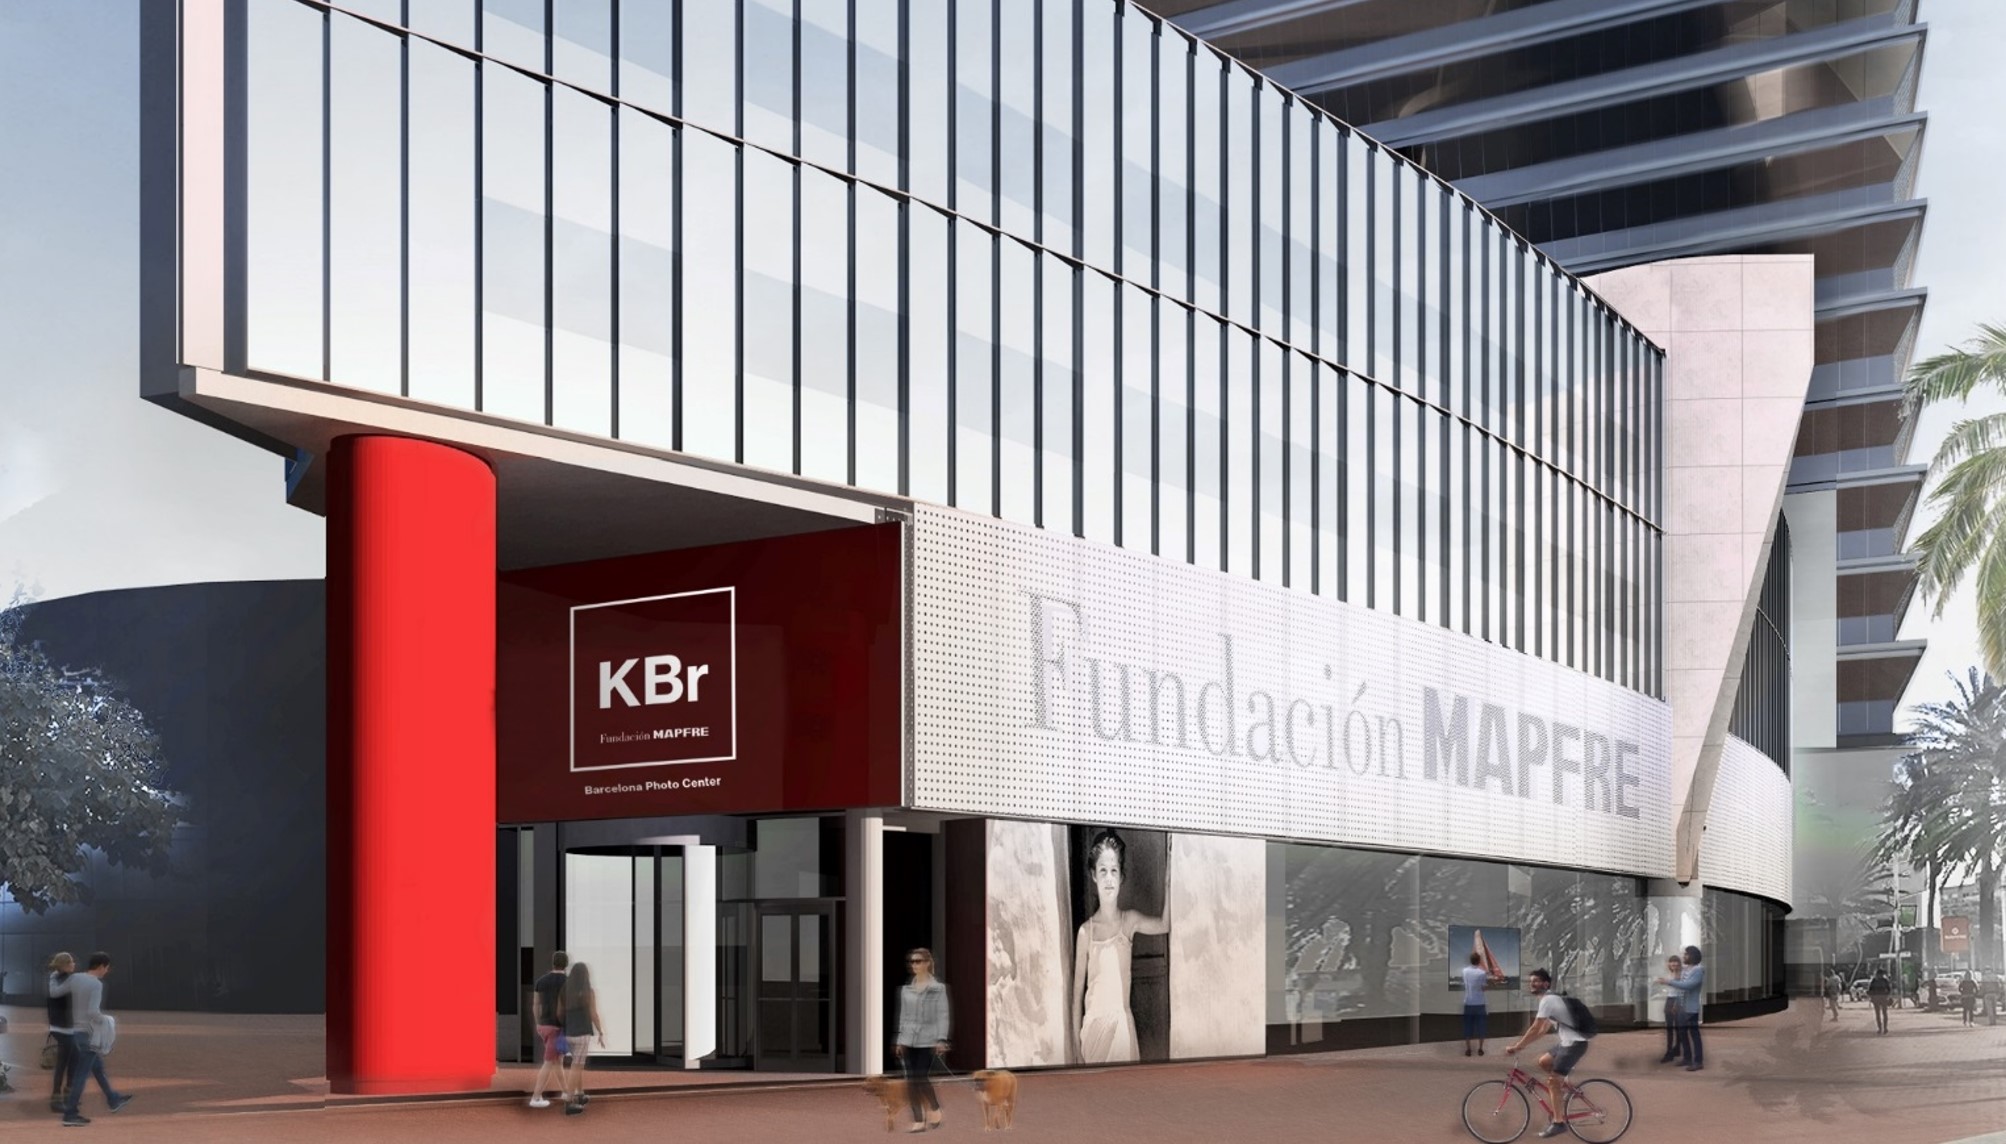 KBr Fundación MAPFRE, Barcelona